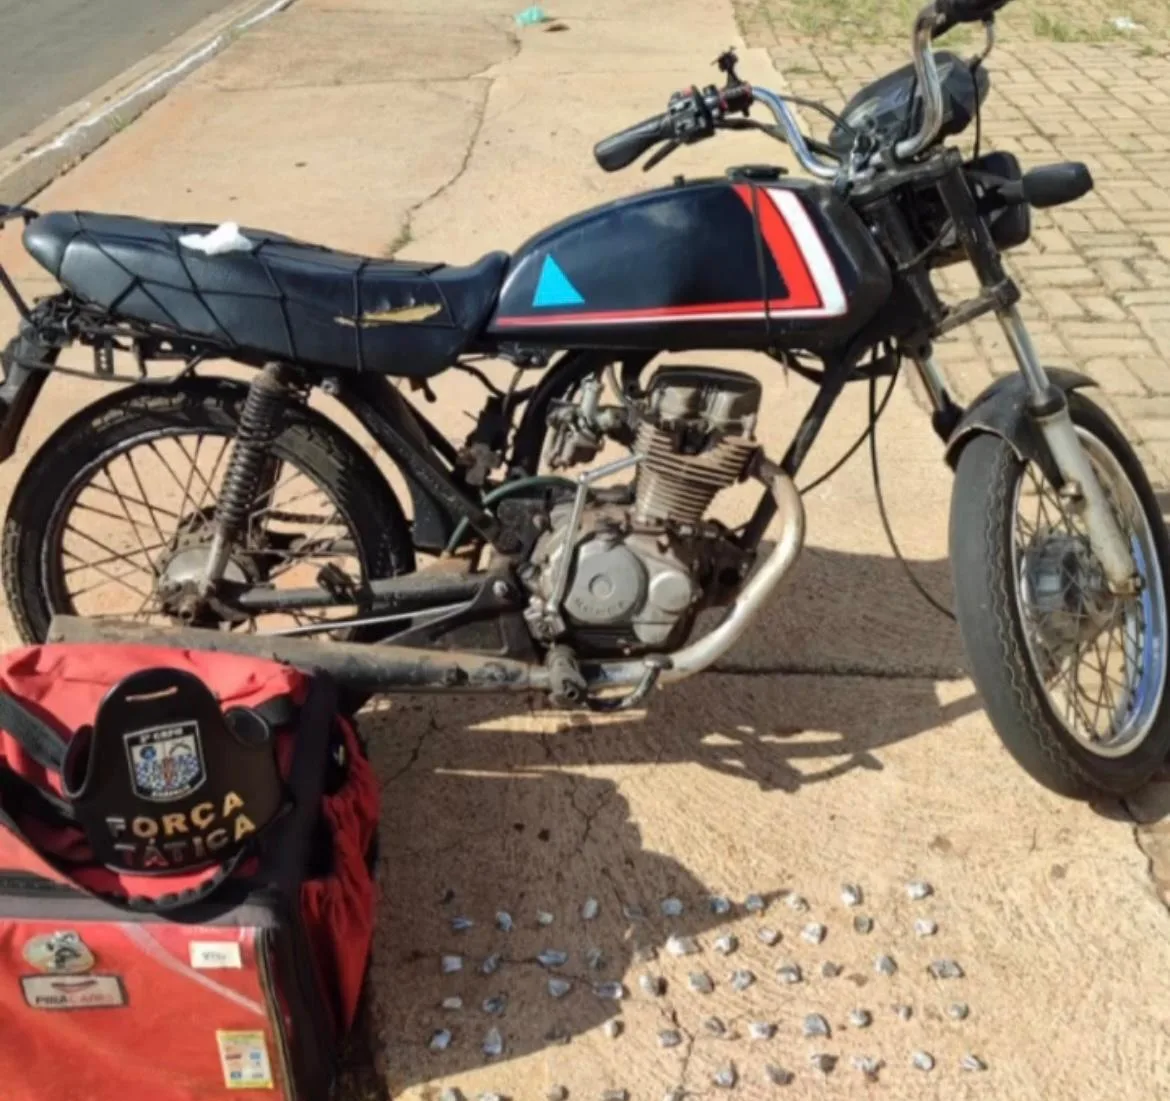 Motocicleta, caixa de entrega e entorpecentes foram apreendidos (Foto: Divulgação/4º BPM)